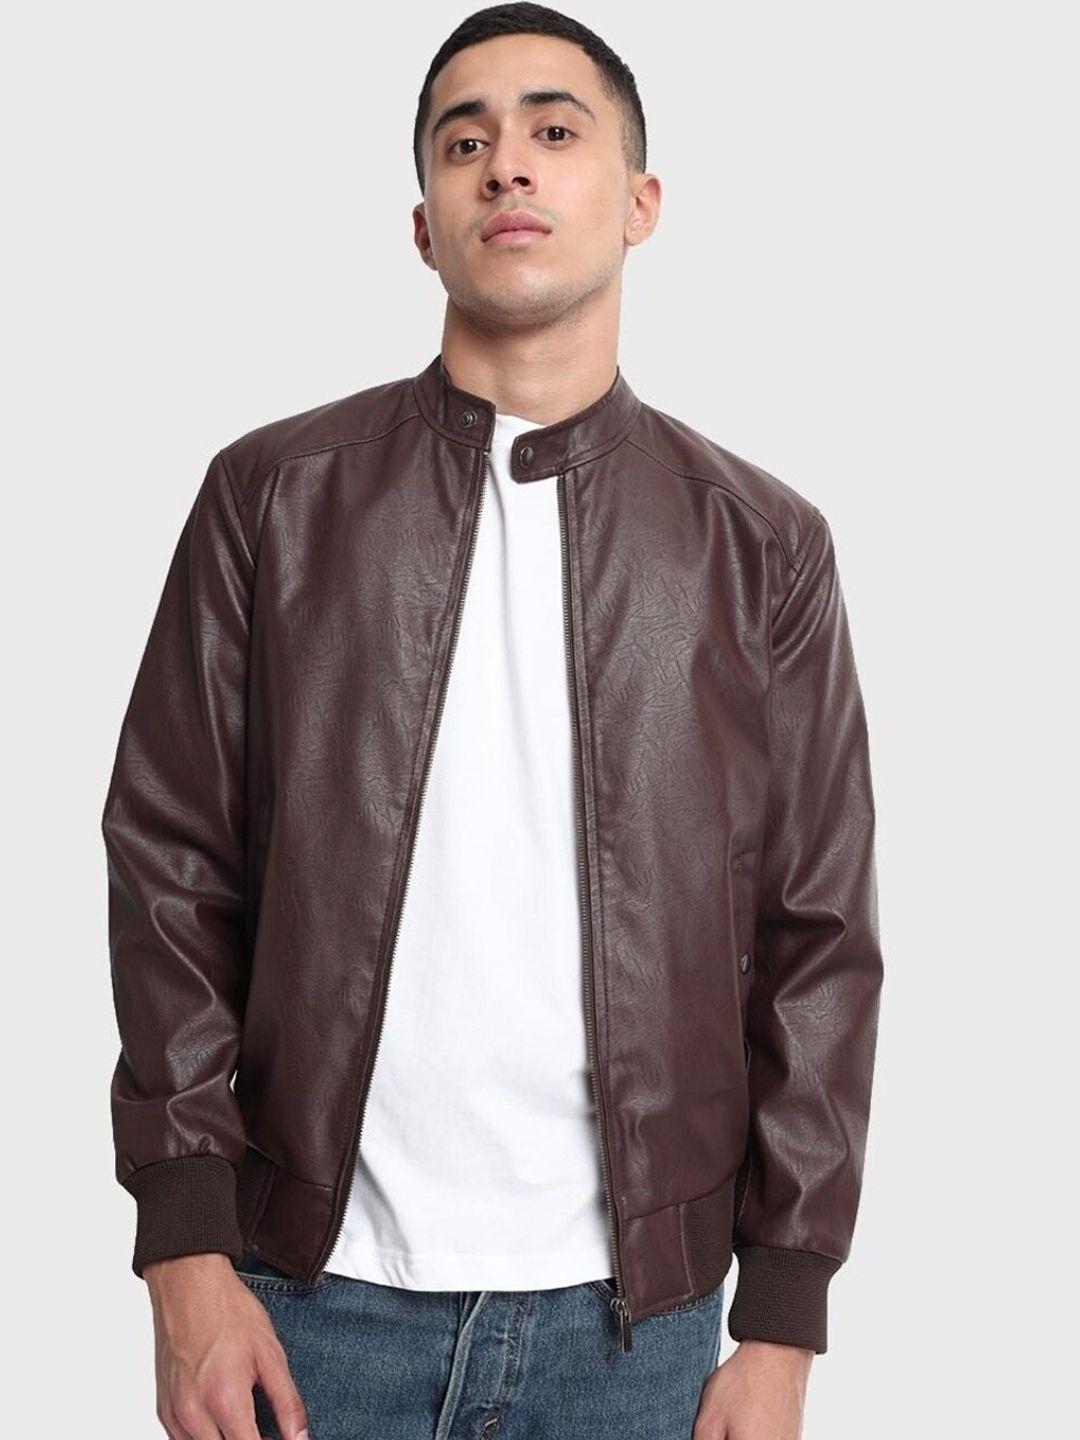 bewakoof-men-brown-solid-open-front-jacket